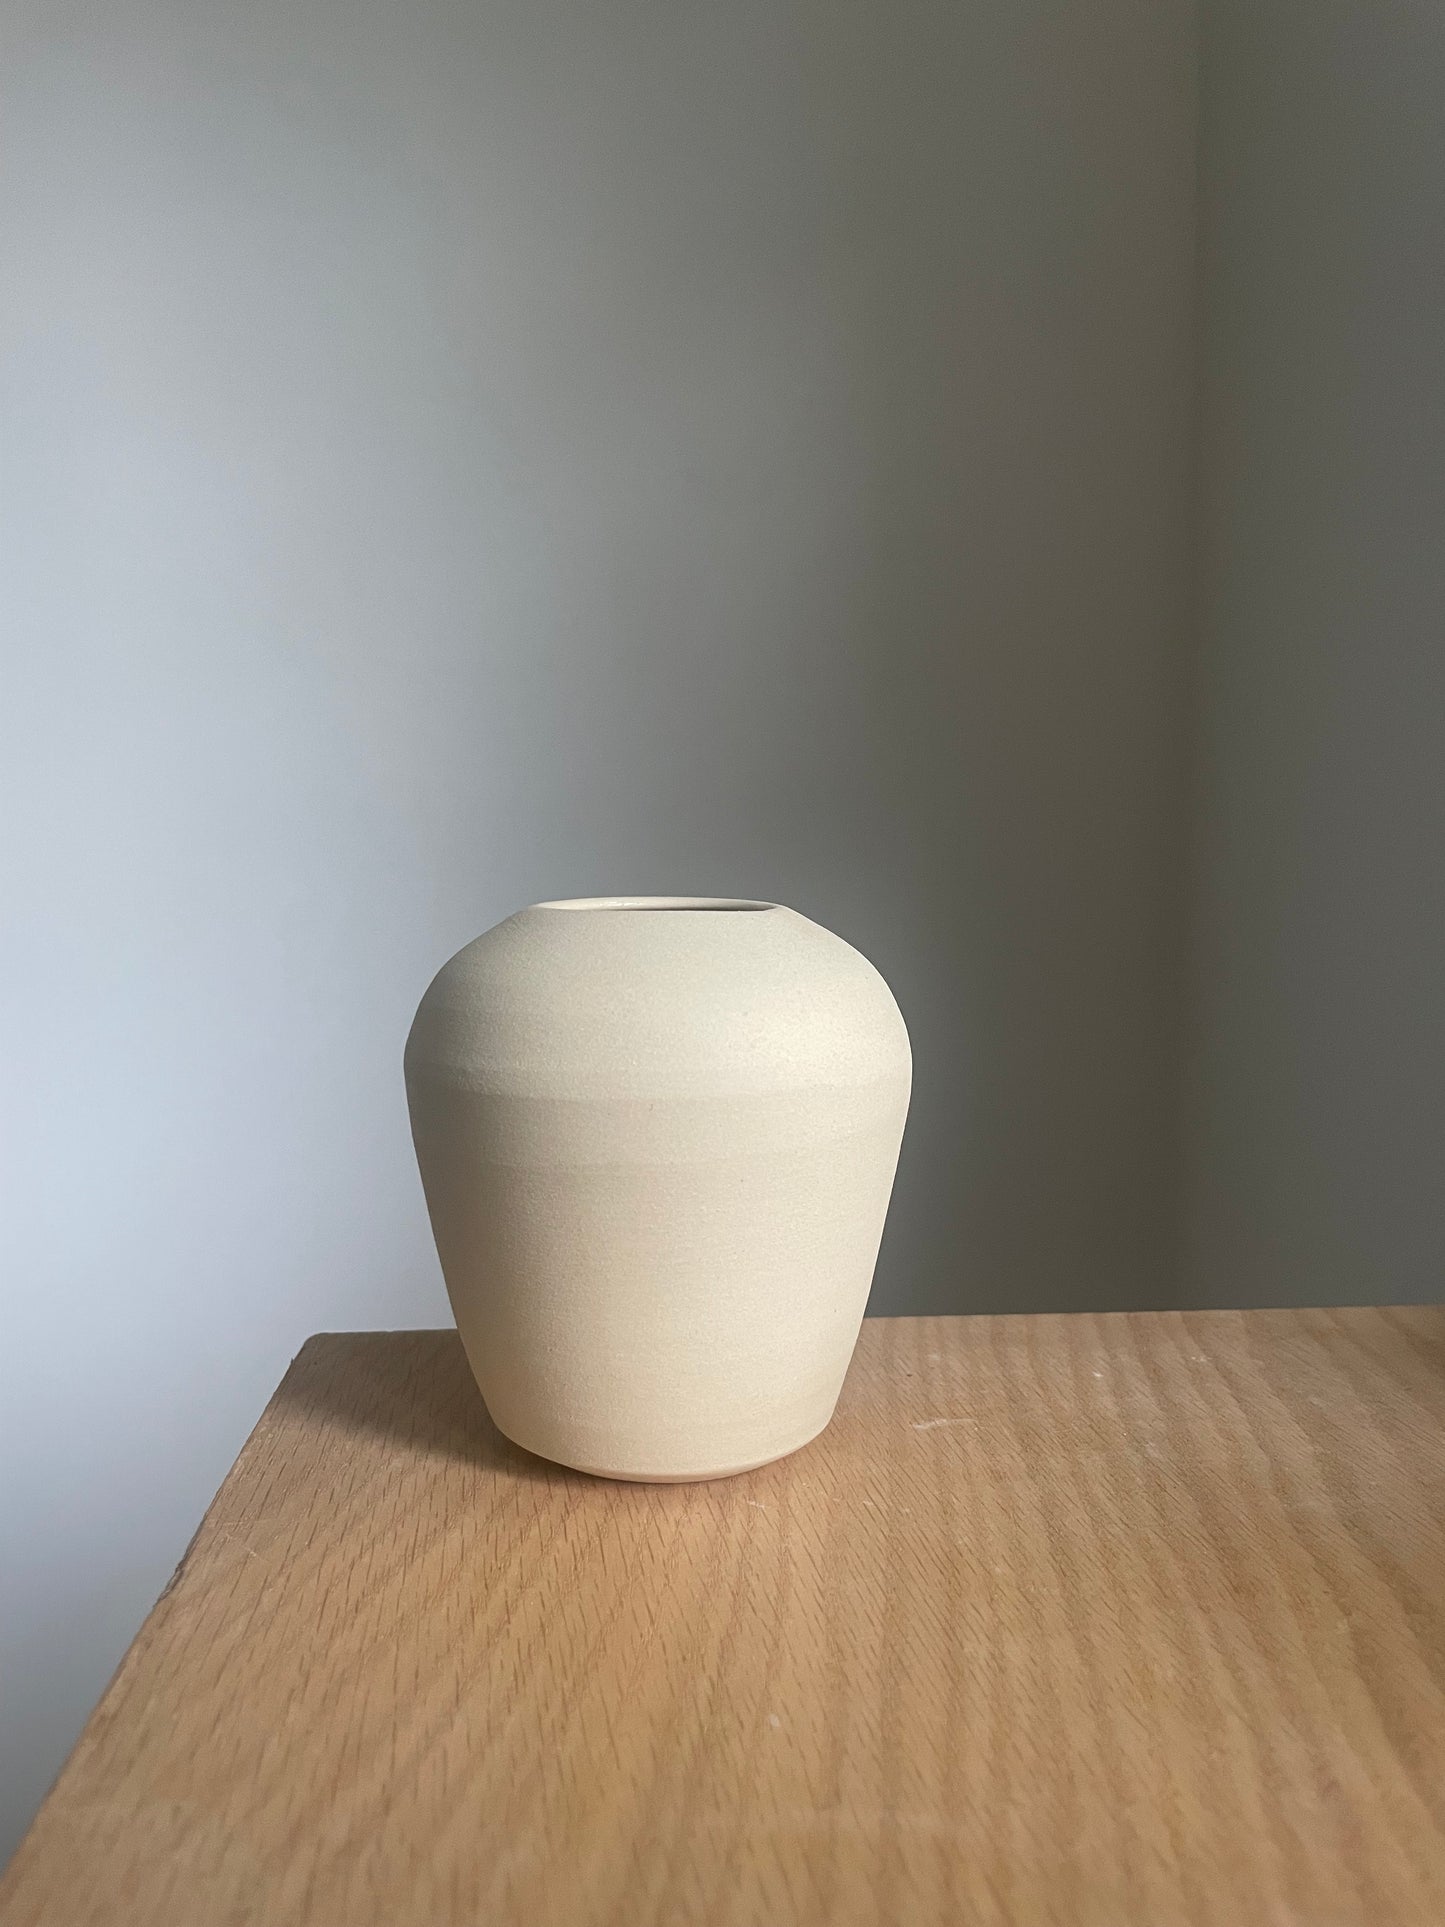 raw white clay bud vase style I